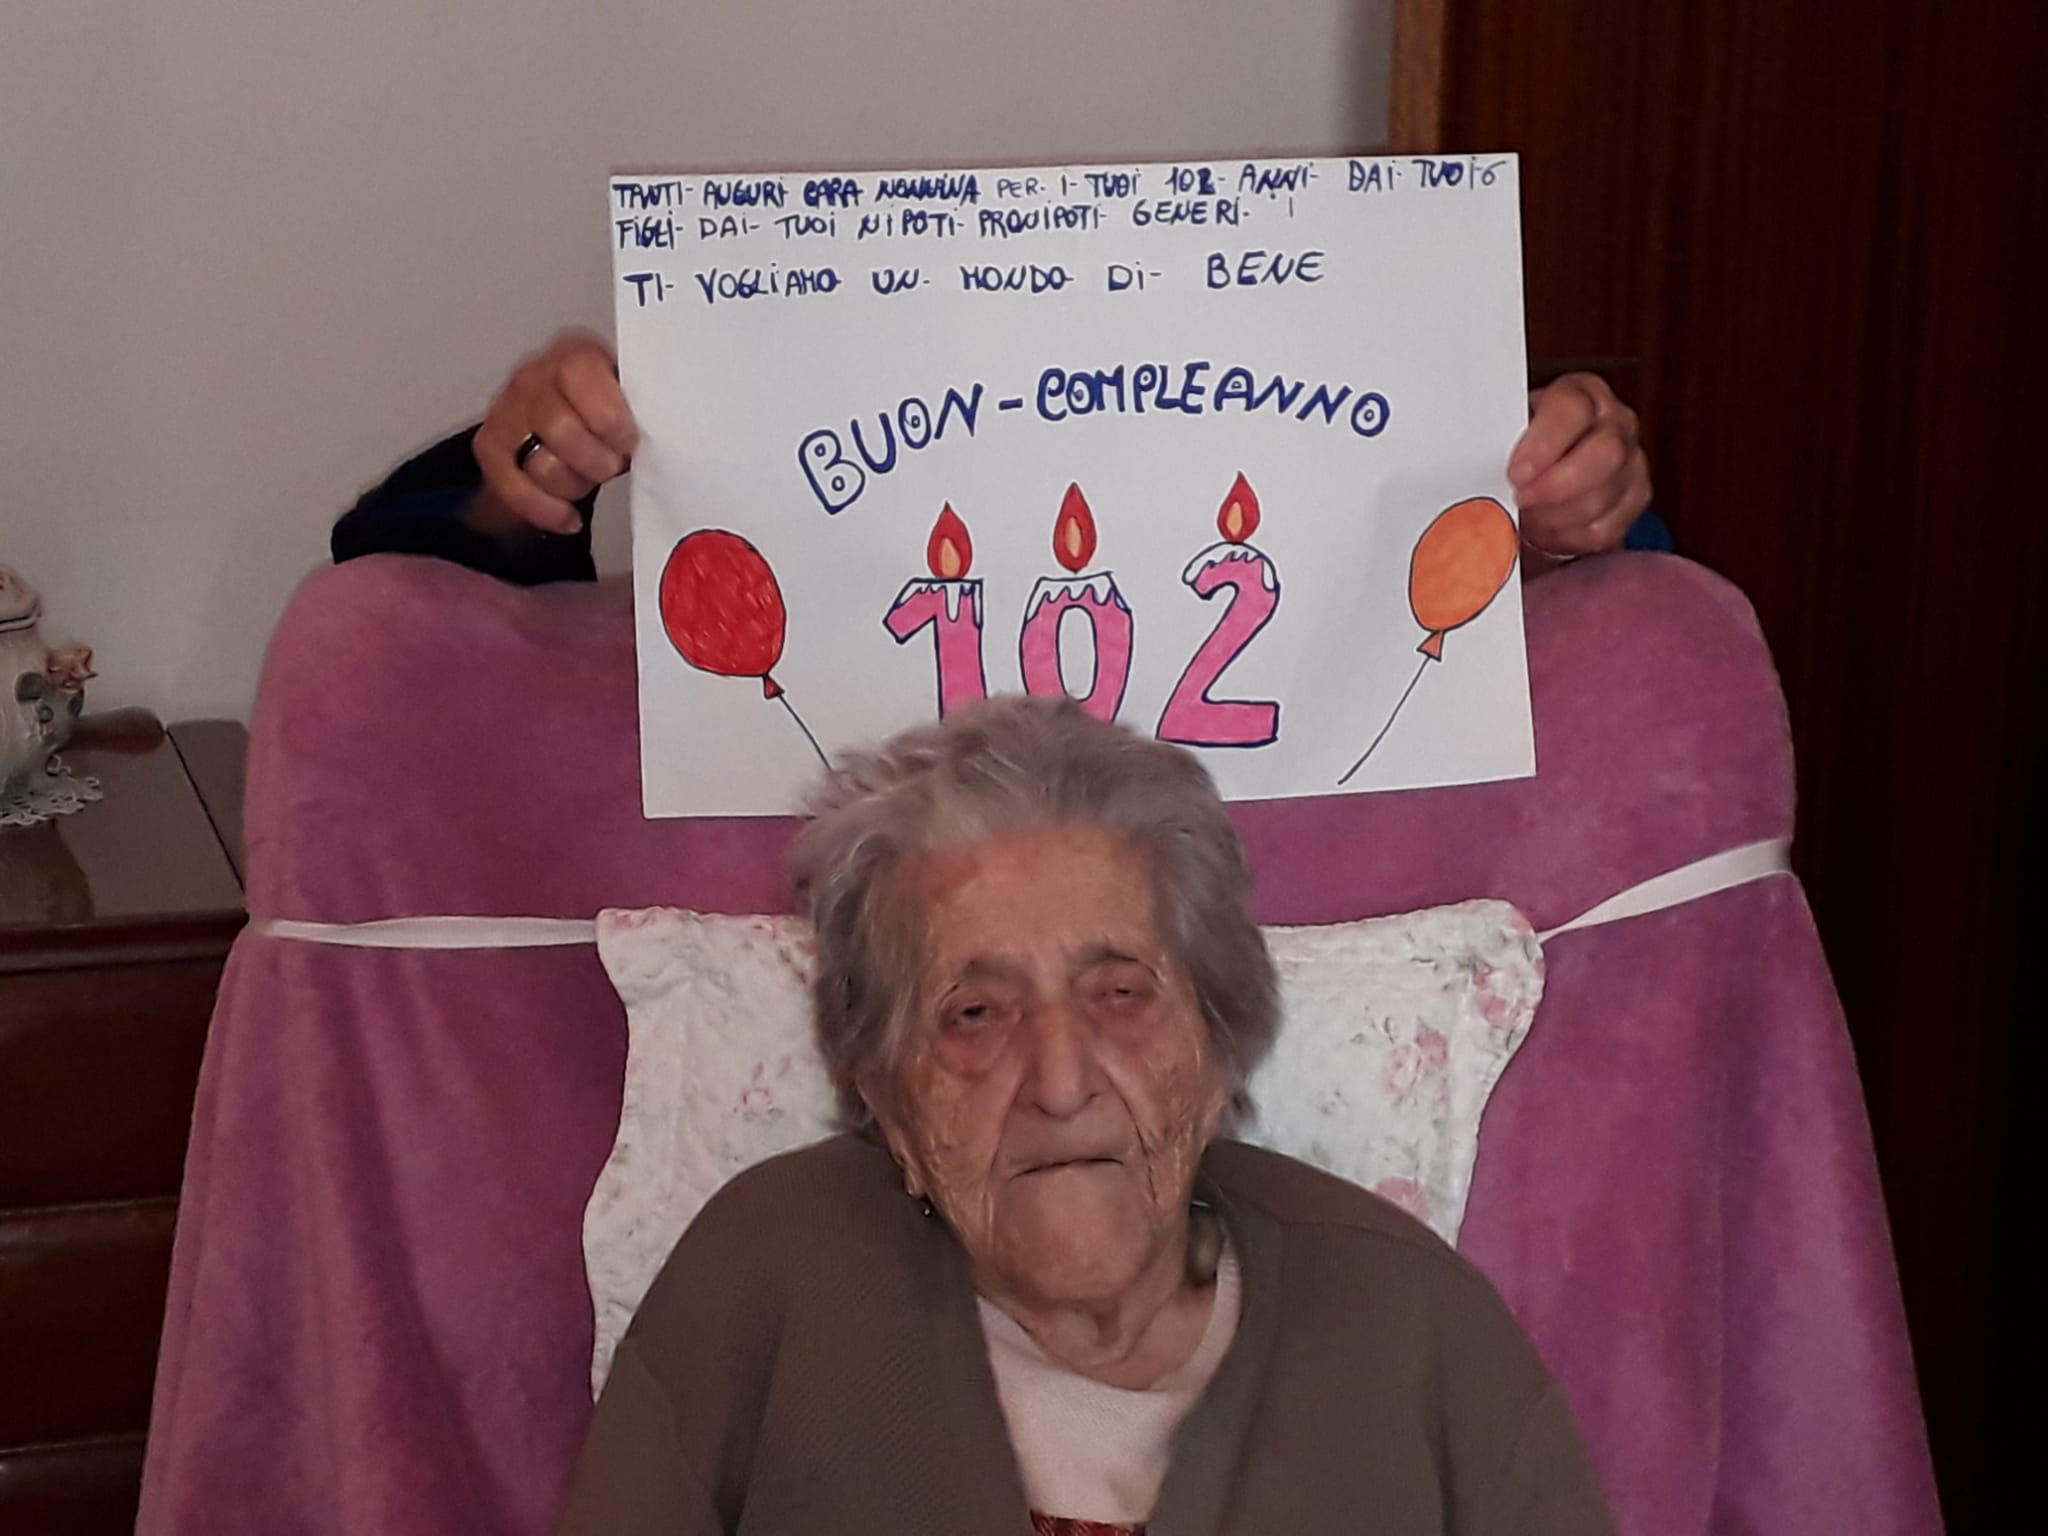 Termini Imerese: 102 candeline per nonna Santa Platano, ma il Covid 19 blocca la festa